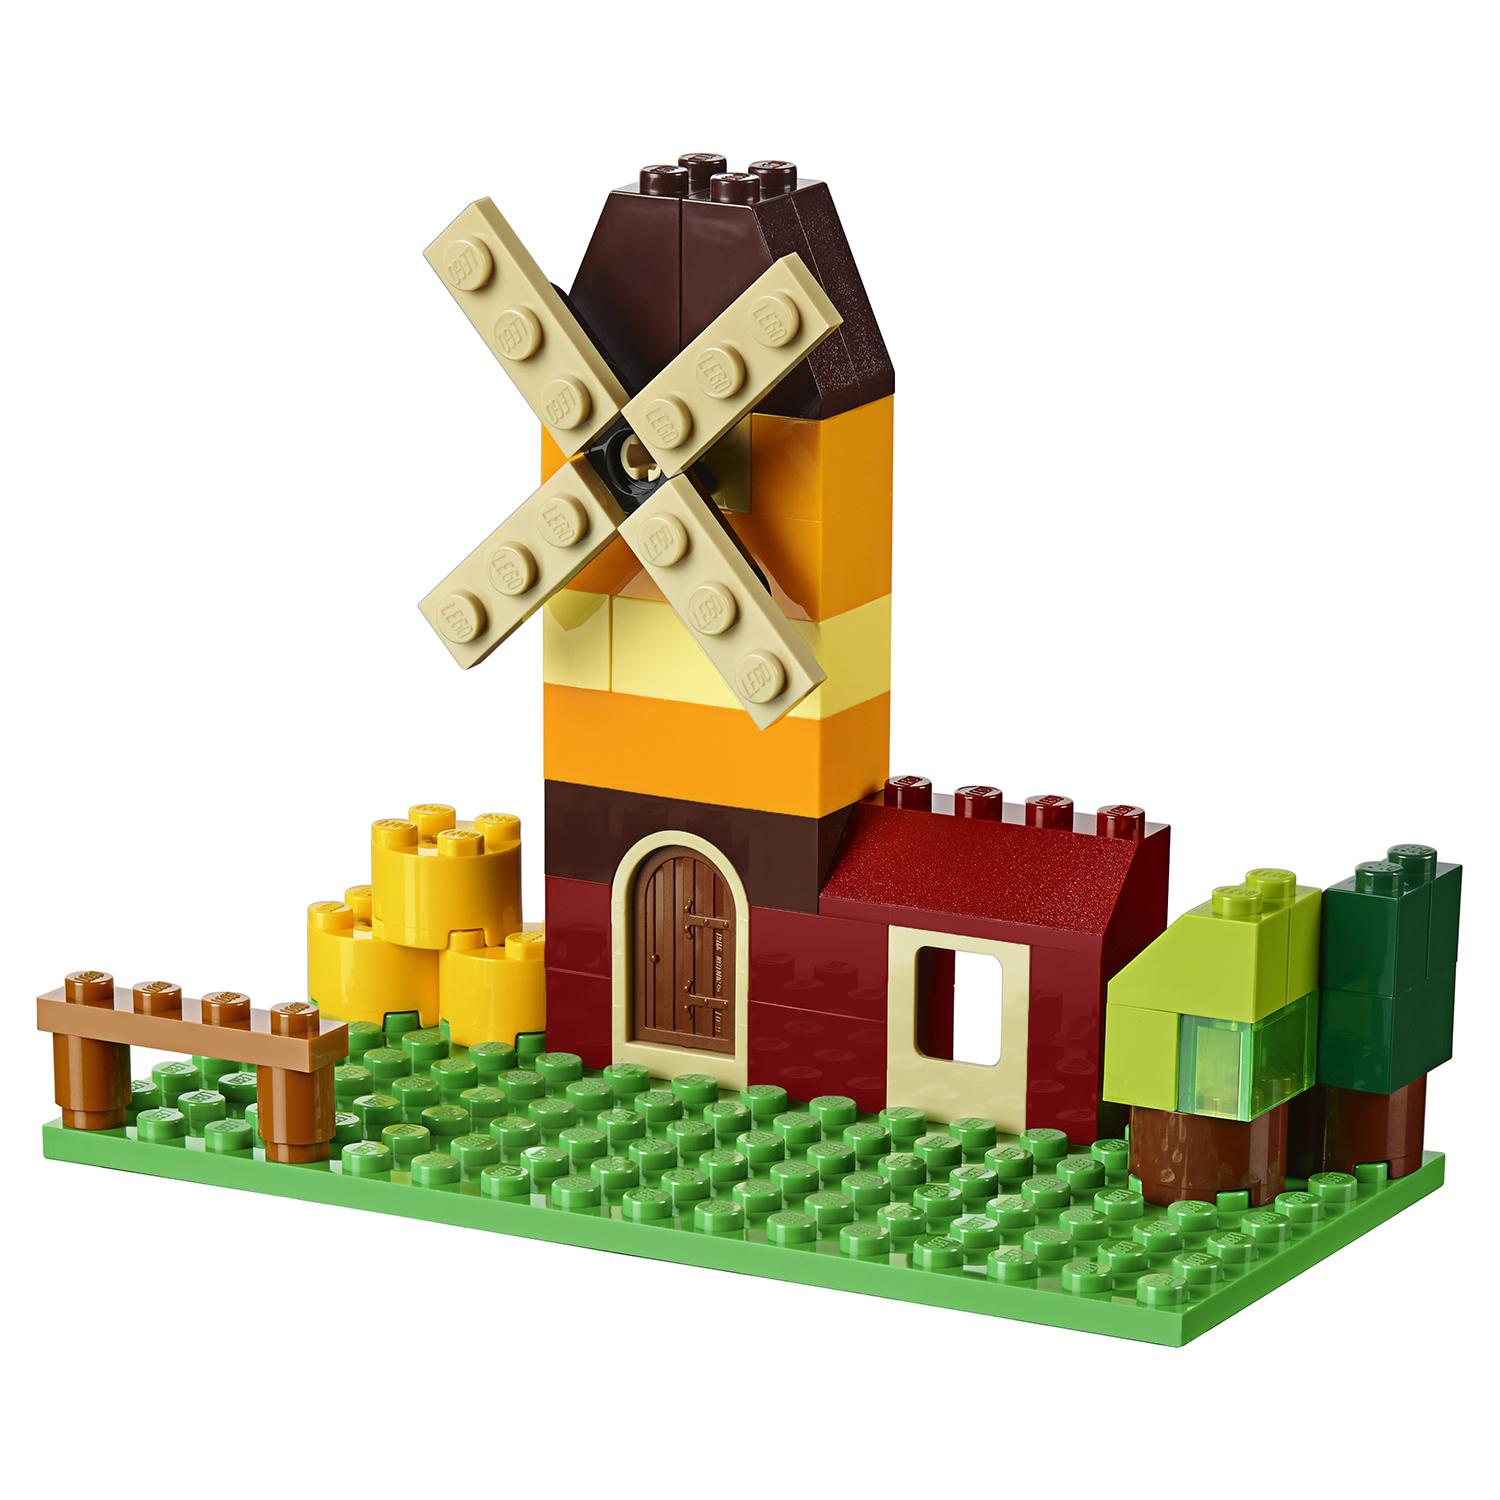 Lego Classic 10696 Набор для творчества среднего размера